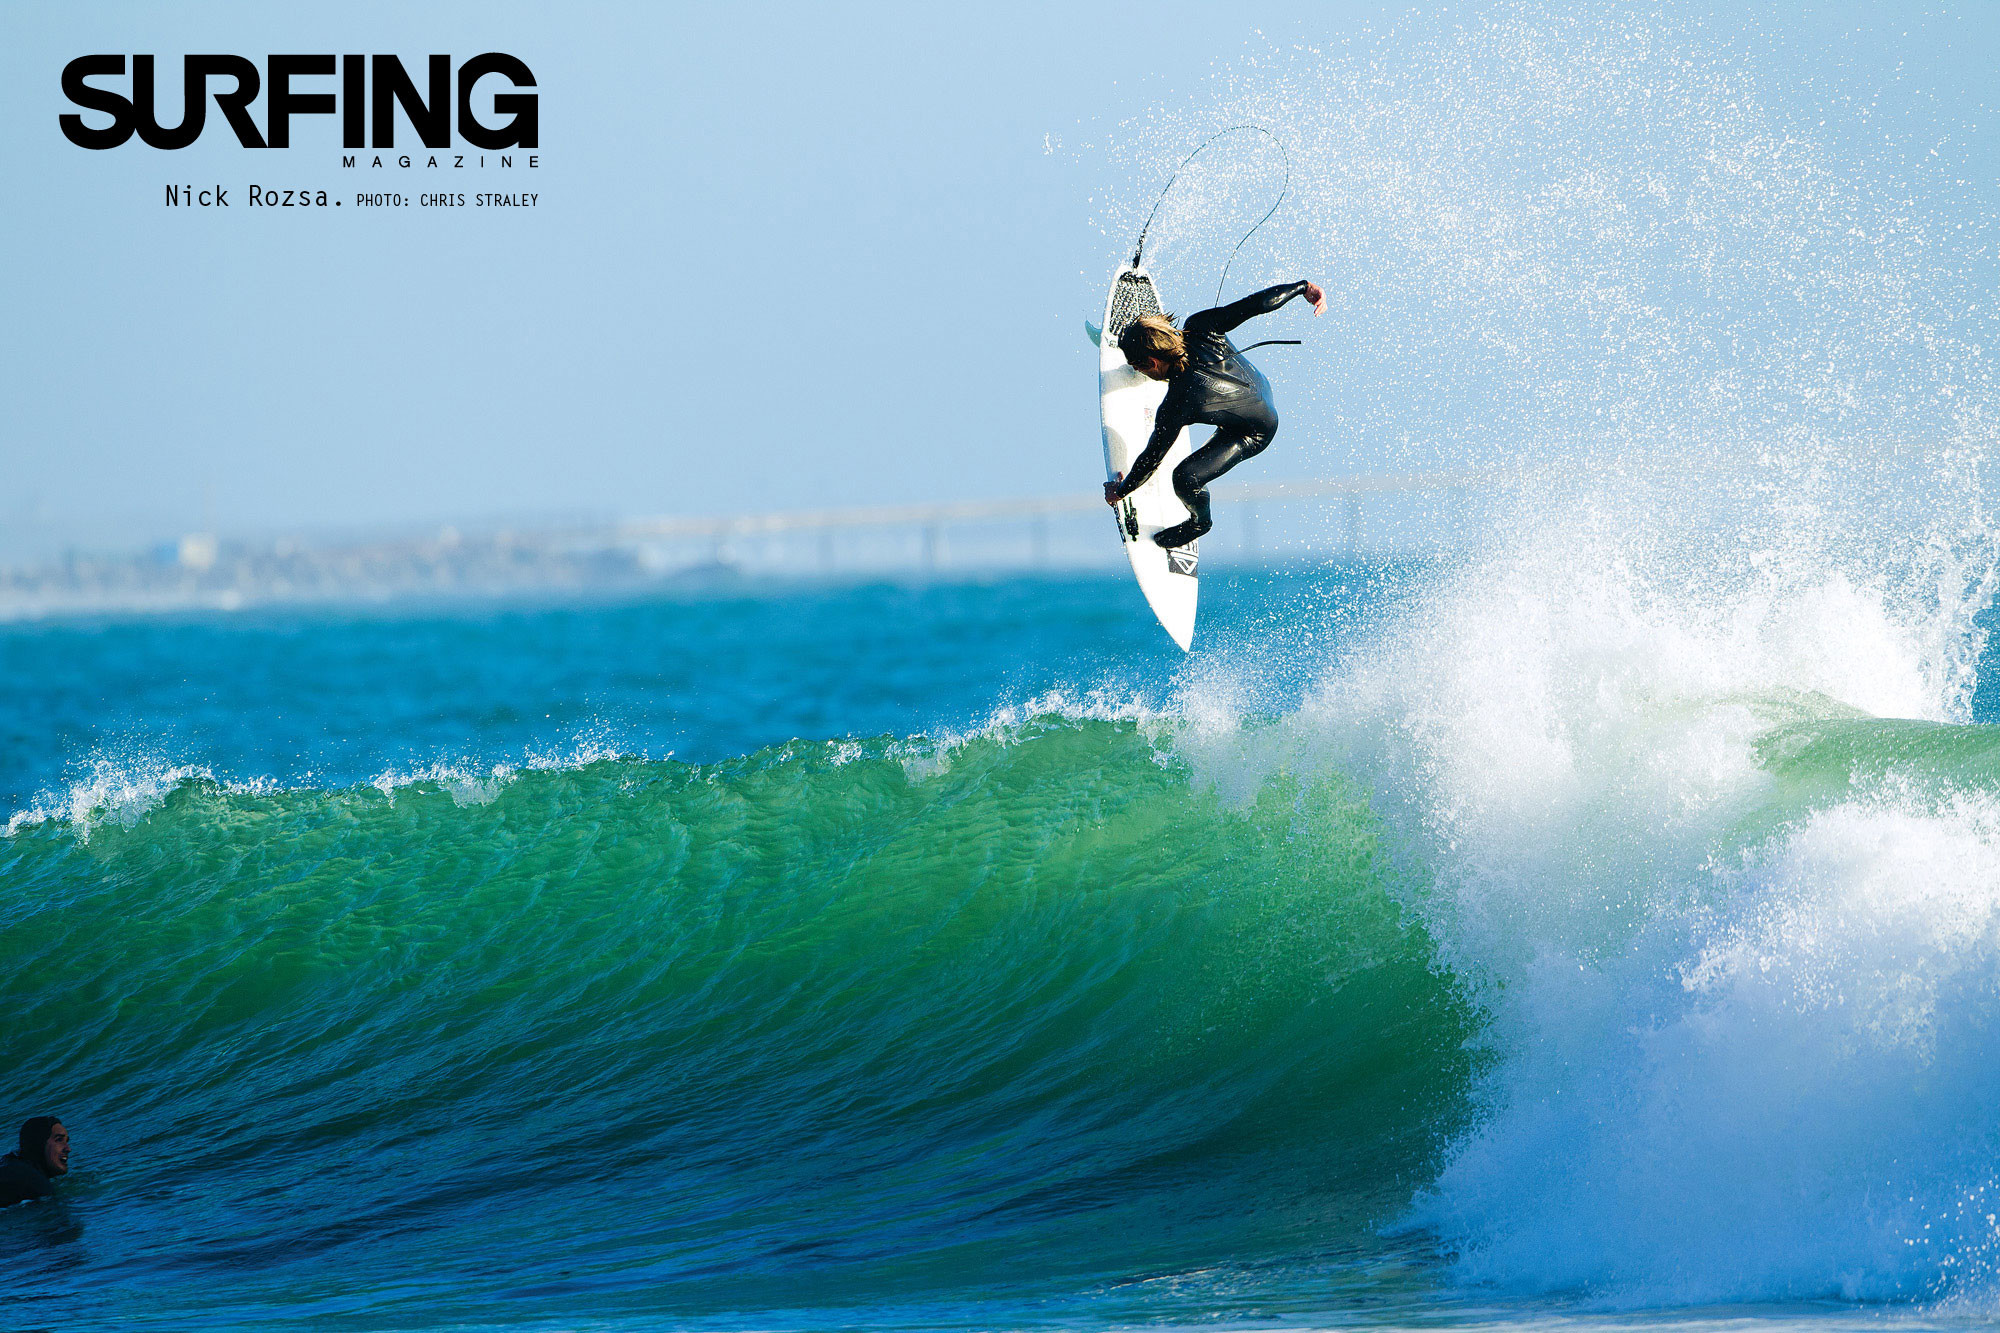 2000x1333 surfing desktop wallpaper nick rosza chris straley surfing magazine .